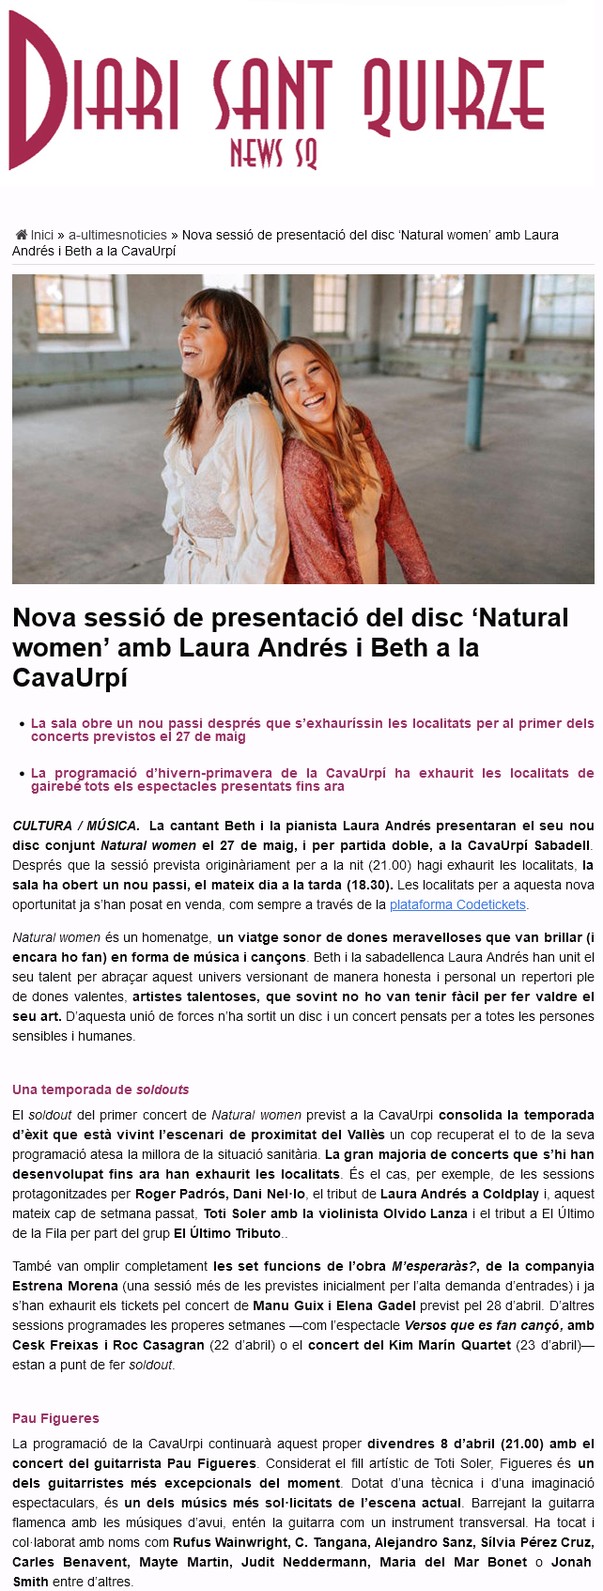 Diari Sant Quirze: Nova sessió de presentació del disc ‘Natural women’ amb Laura Andrés i Beth